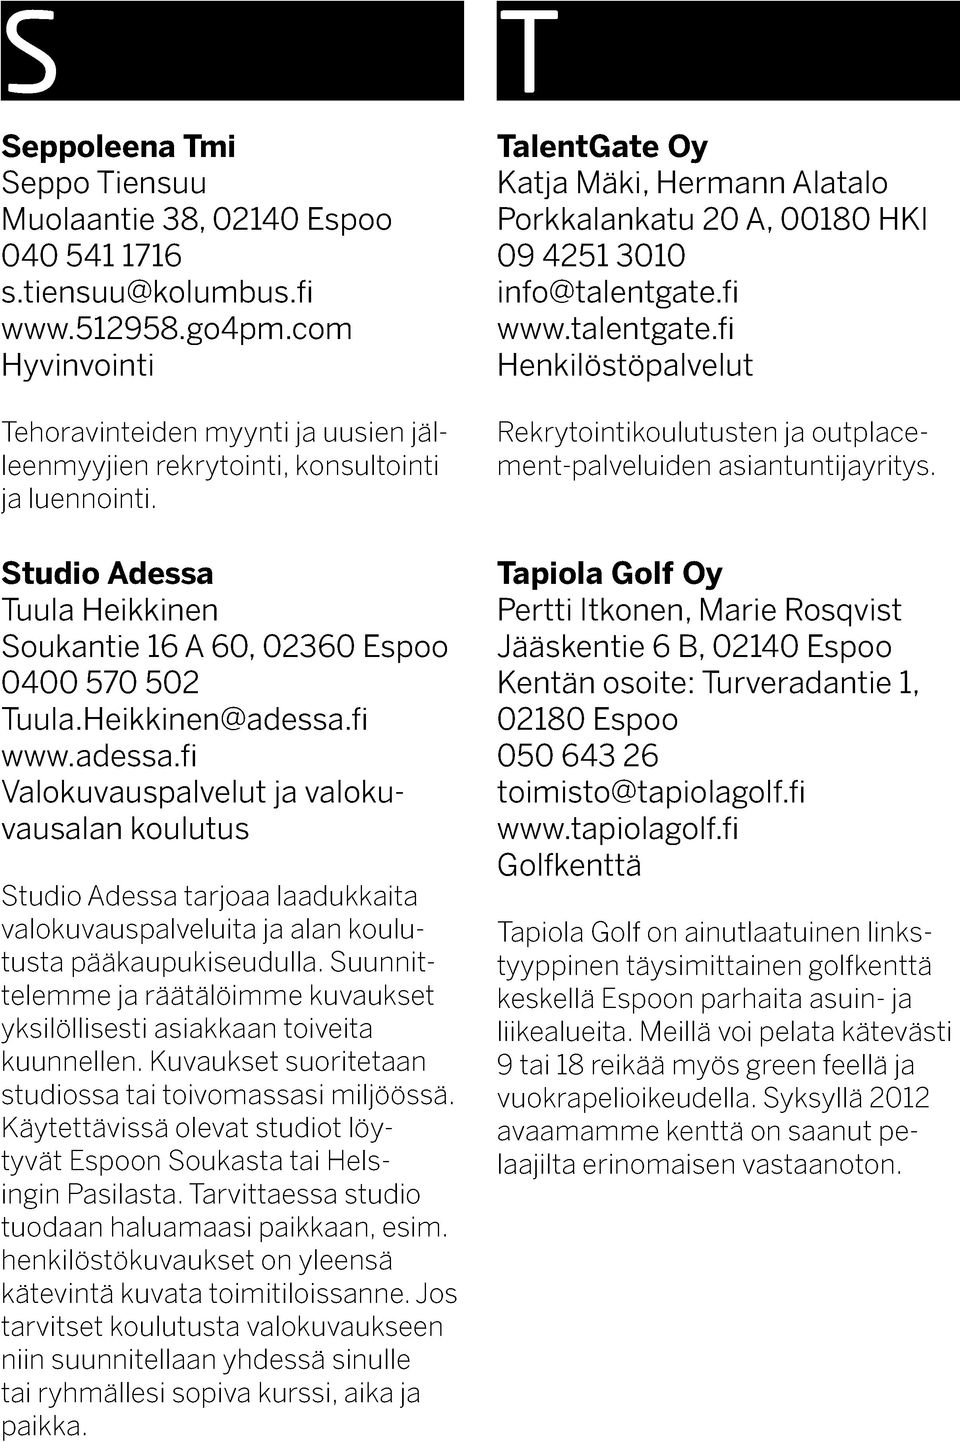 Heikkinen@adessa.fi www.adessa.fi Valokuvauspalvelut ja valokuvausalan koulutus Studio Adessa tarjoaa laadukkaita valokuvauspalveluita ja alan koulutusta pääkaupukiseudulla.